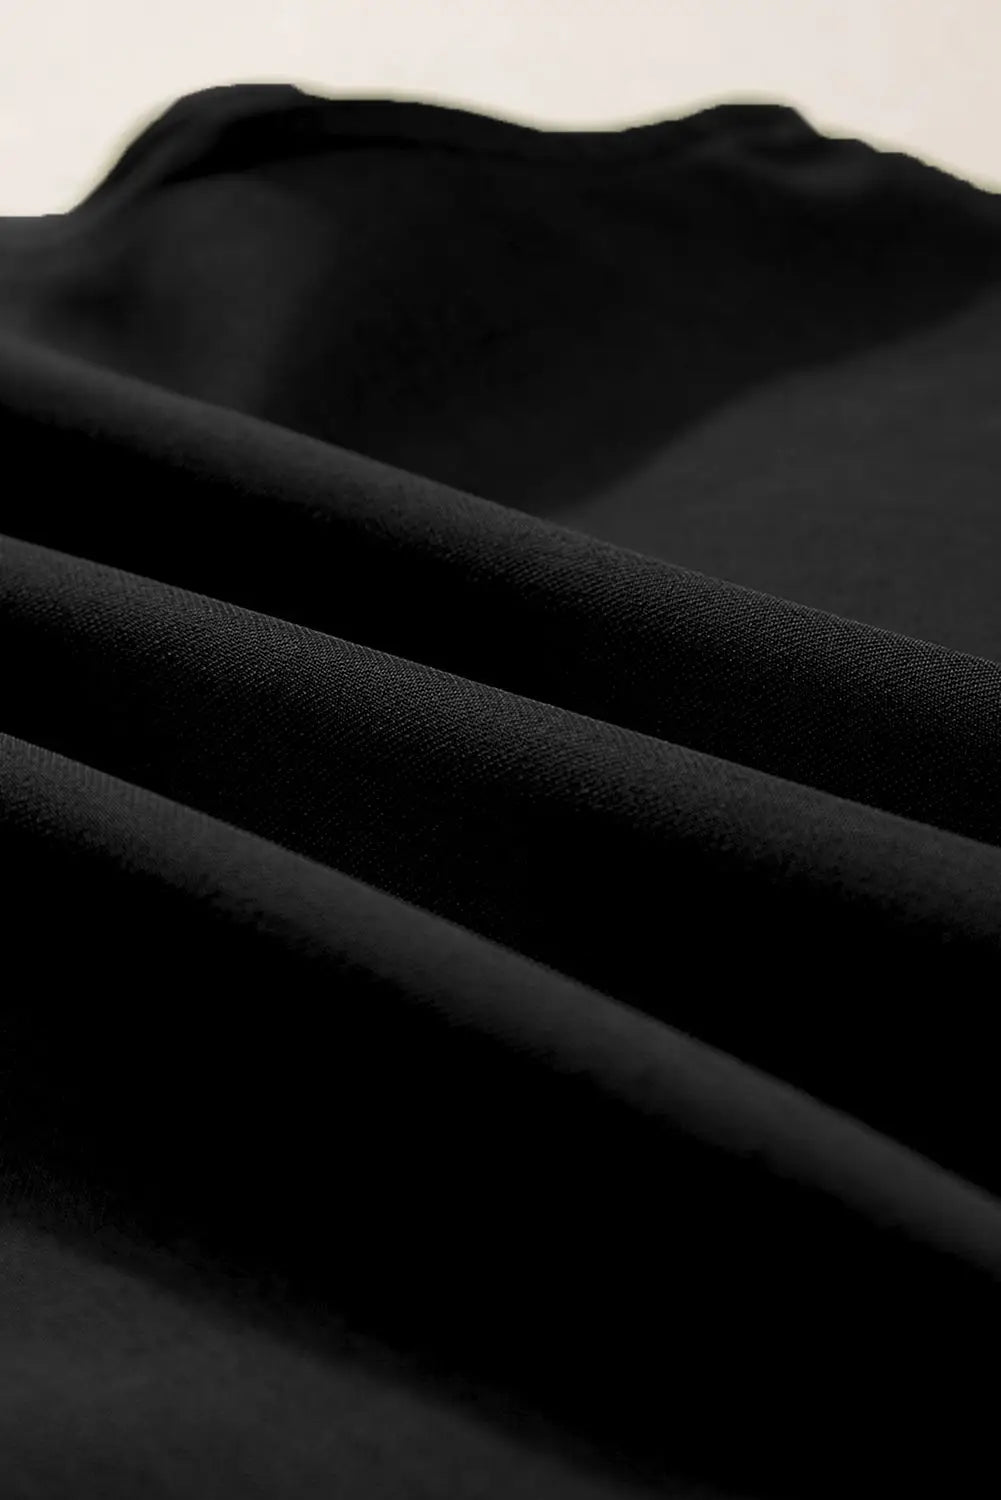 Black ricrac trim tank top shorts set - two piece sets/short sets